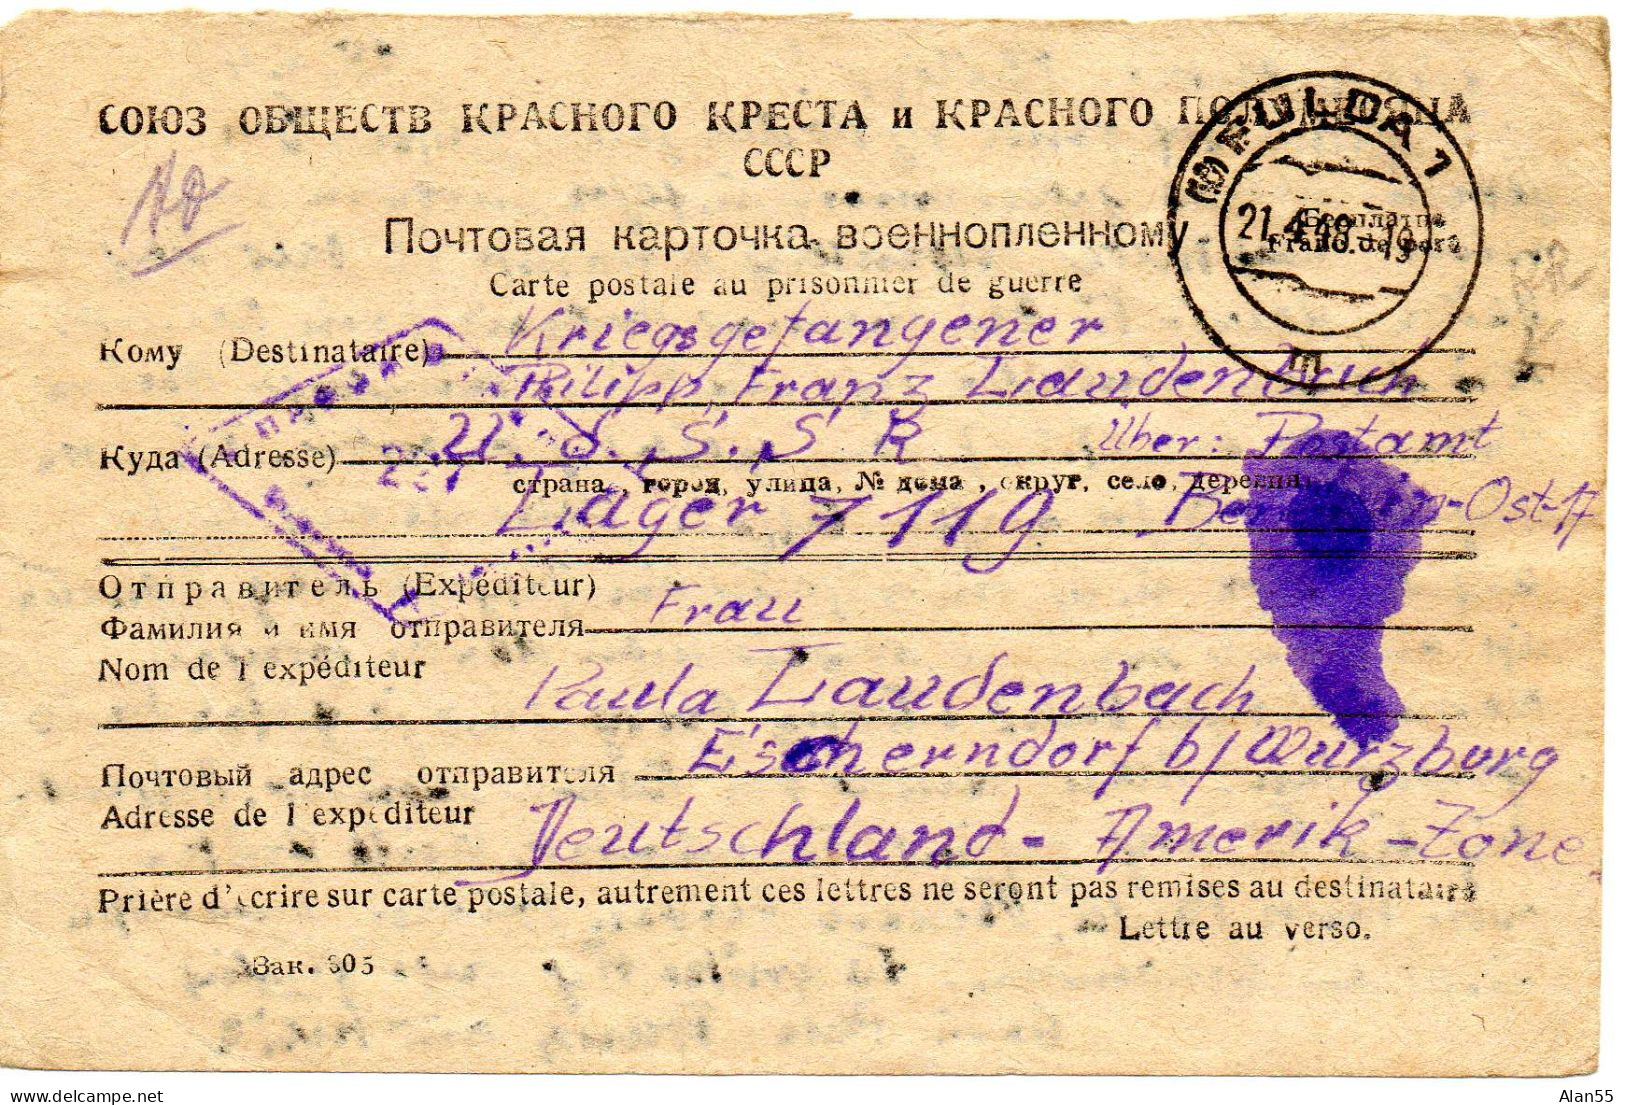 URSS. 1948. CARTE FAMILIALE CROIX-ROUGE. (SENS ALLEMAGNE-URSS). CENSURE - Covers & Documents